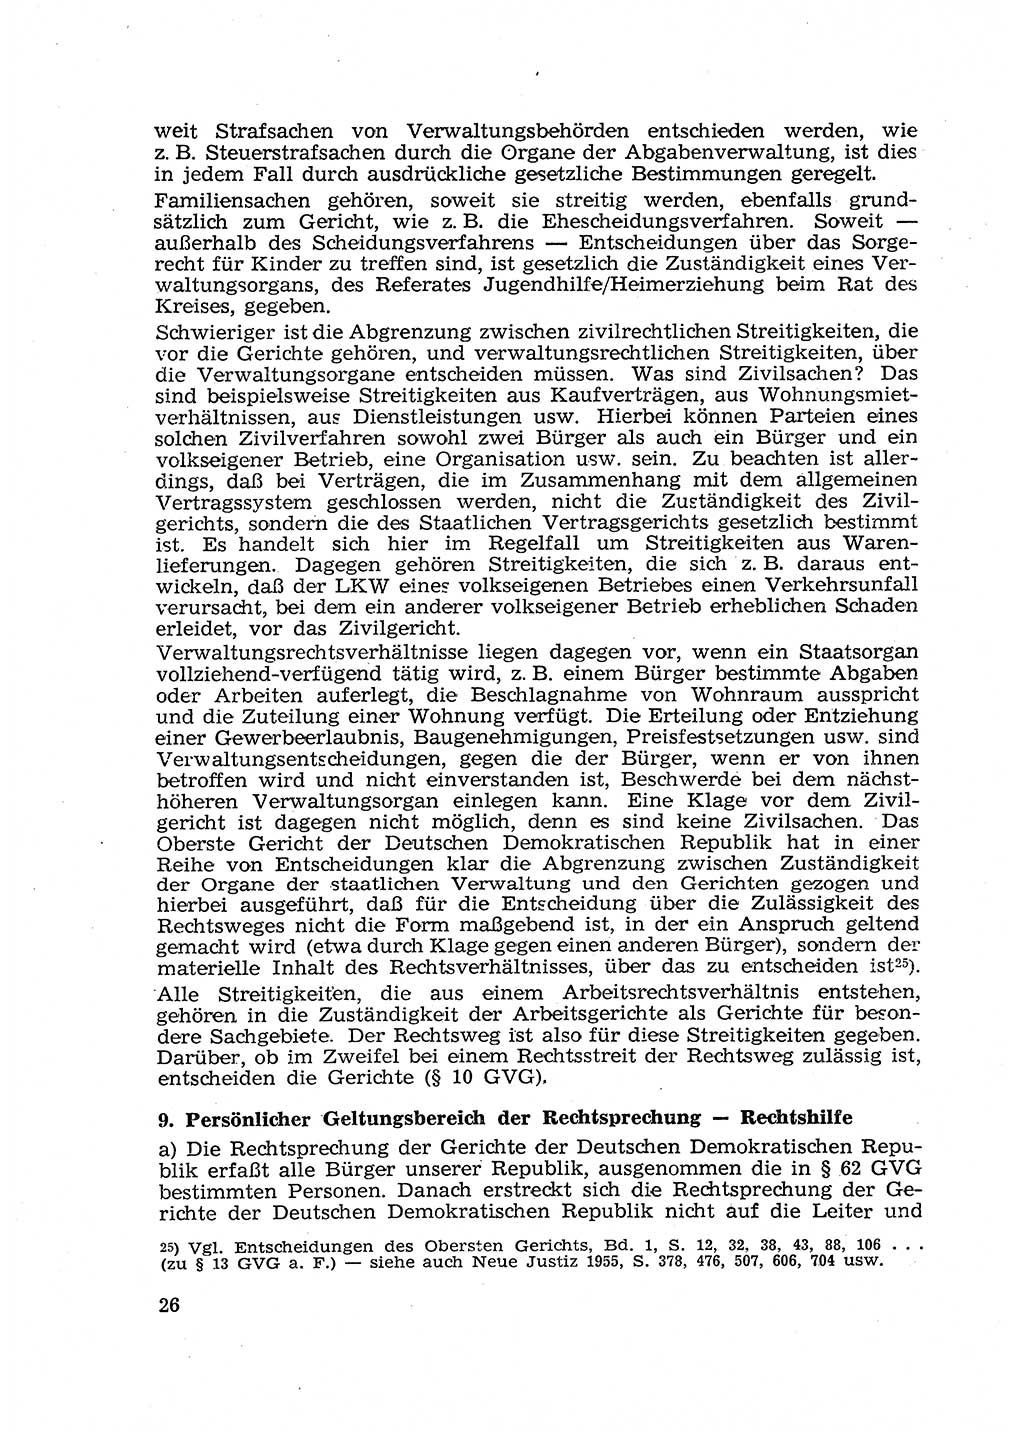 Gericht und Rechtsprechung in der Deutschen Demokratischen Republik (DDR) 1956, Seite 26 (Ger. Rechtspr. DDR 1956, S. 26)